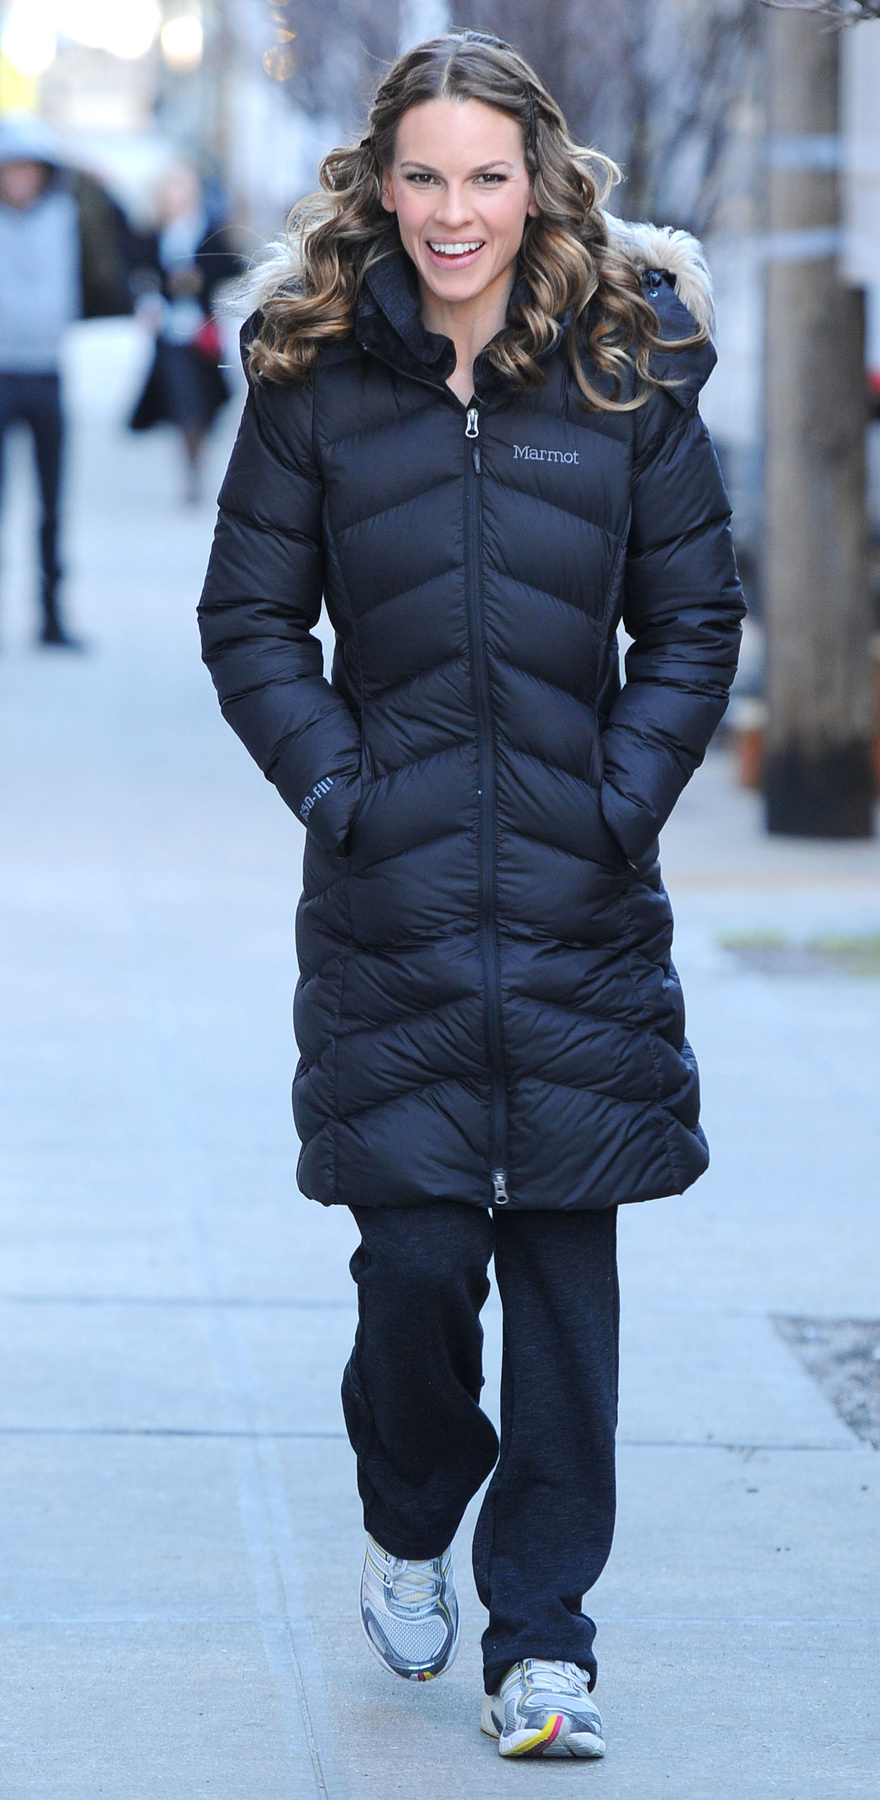 Bruce Willis és Demi Moore 27 éves lánya, Rumer Willis is inkább a meleg paplankabátot választotta a csinos, de hűvös átmeneti kabát helyett.